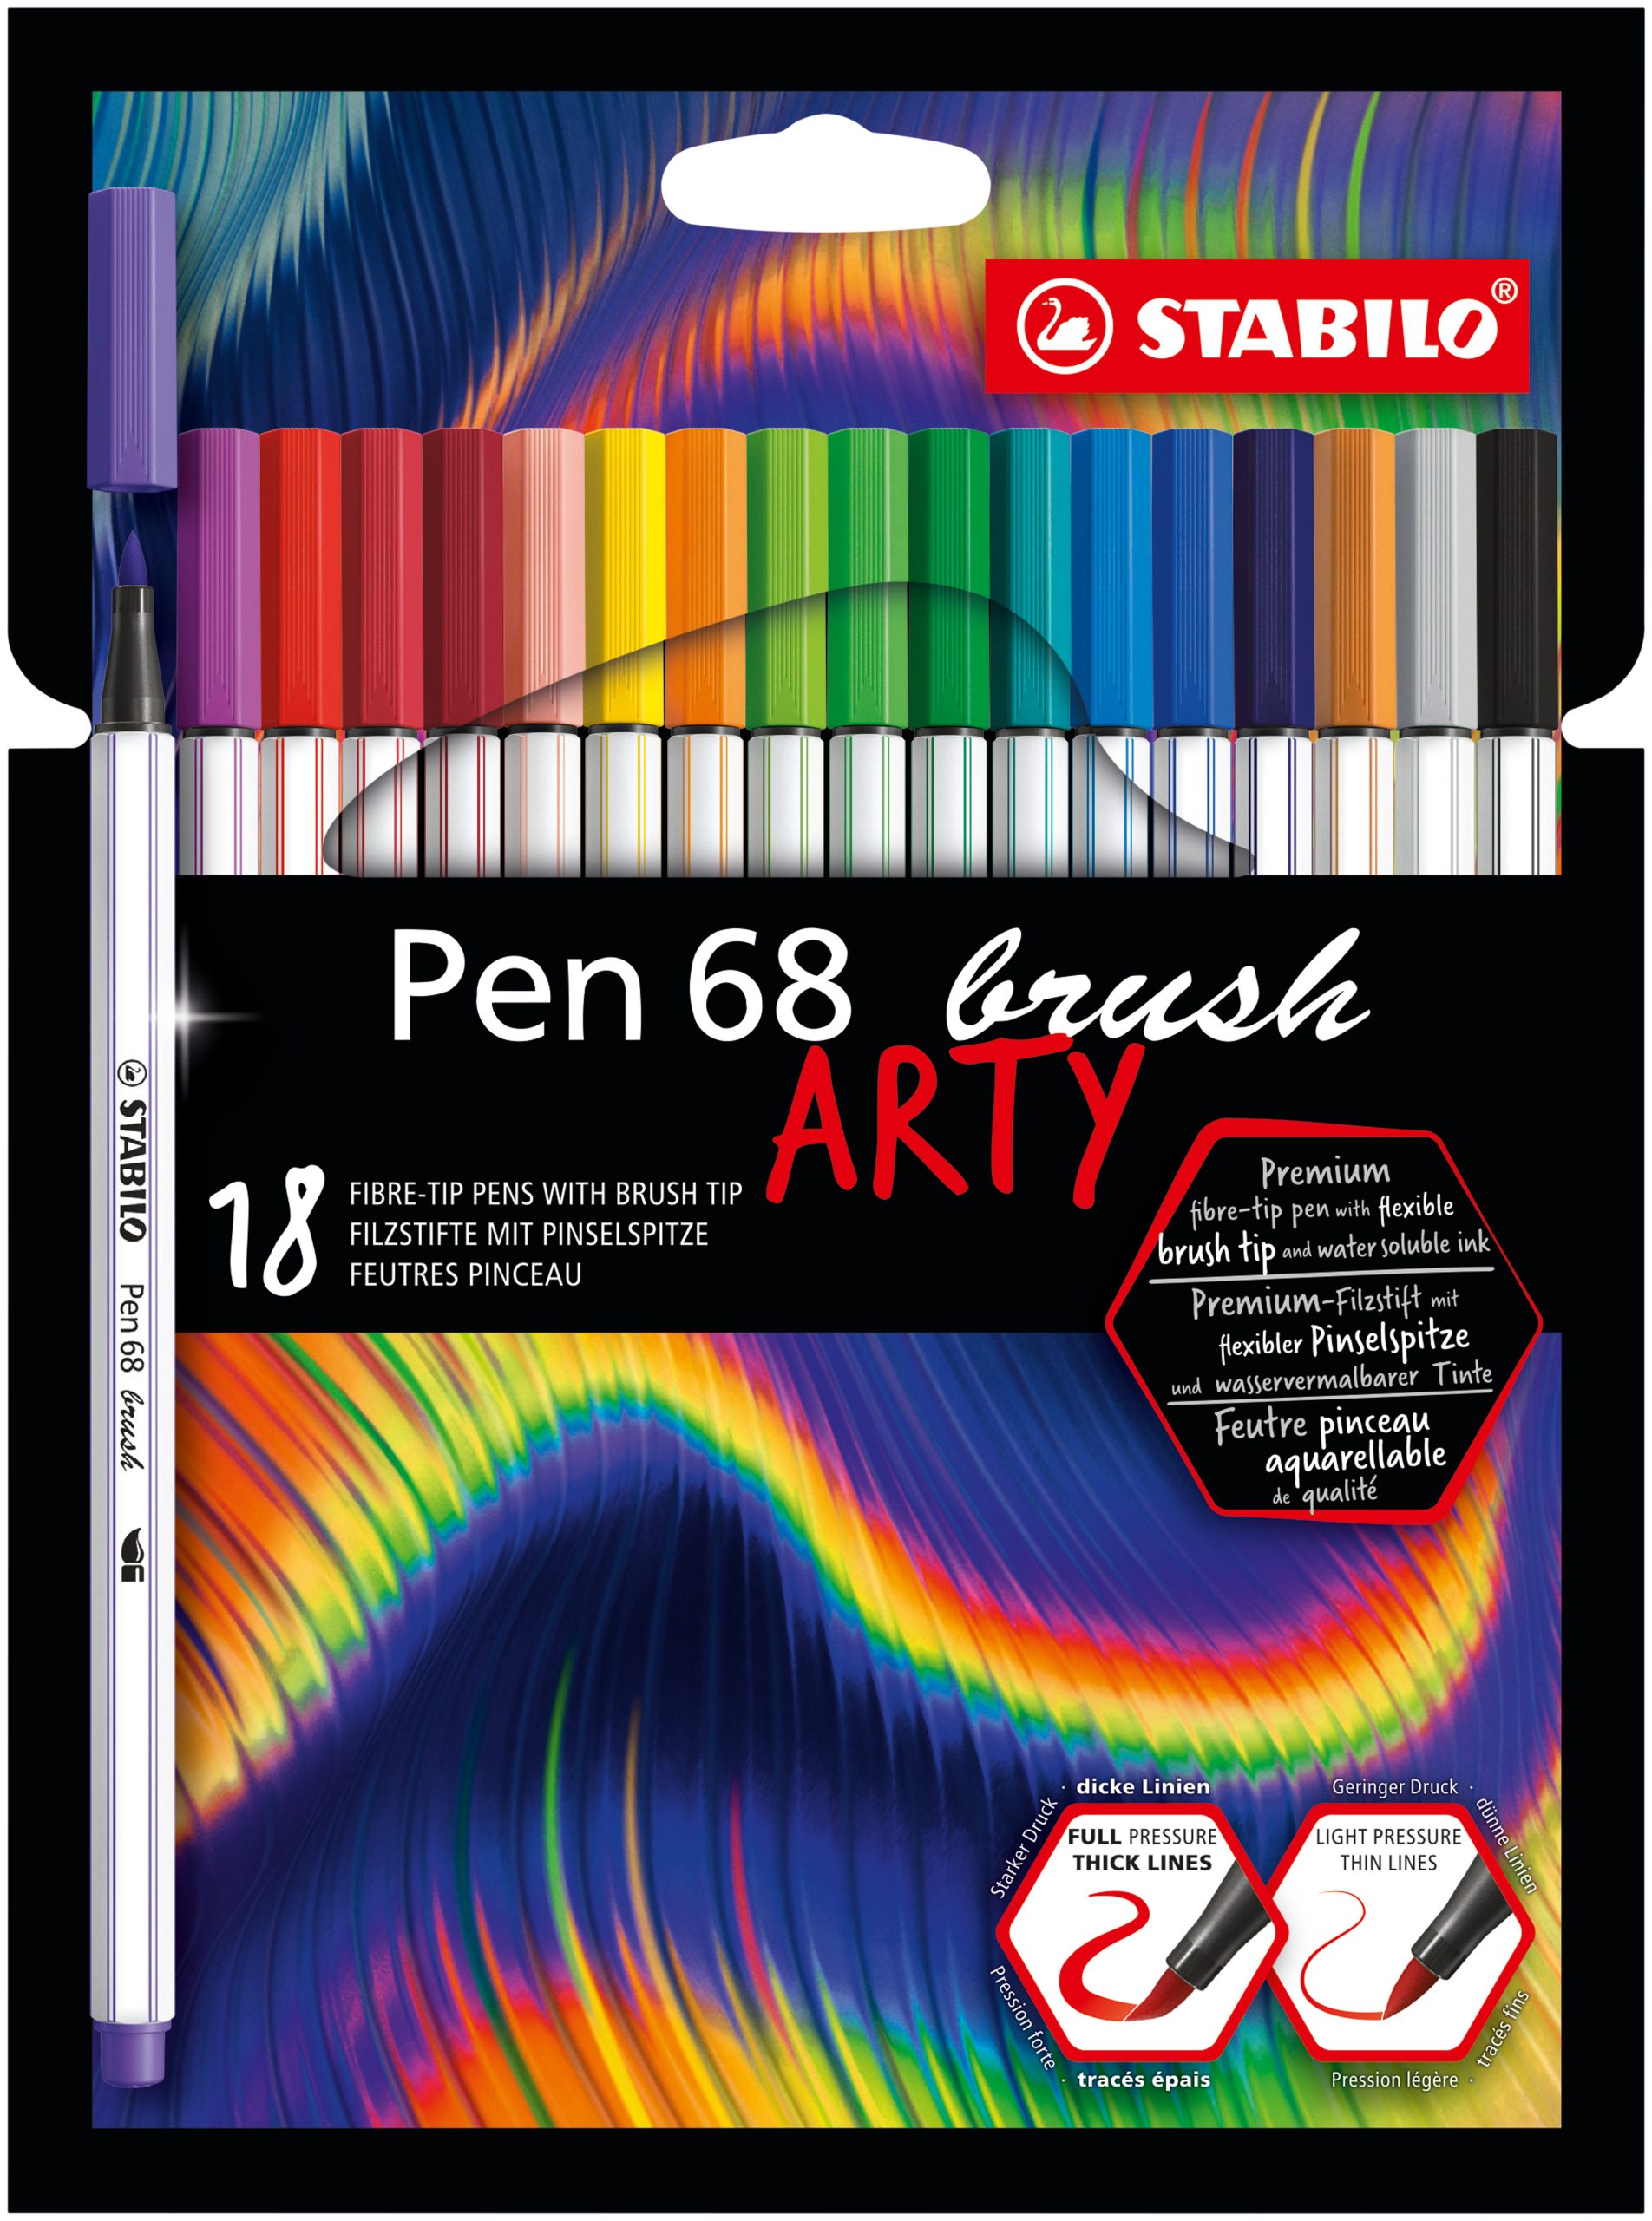 Pennarello Premium con punta a pennello per linee spesse e sottili - STABILO  Pen 68 brush - ARTY - Astuccio da 18 - Colori assortiti